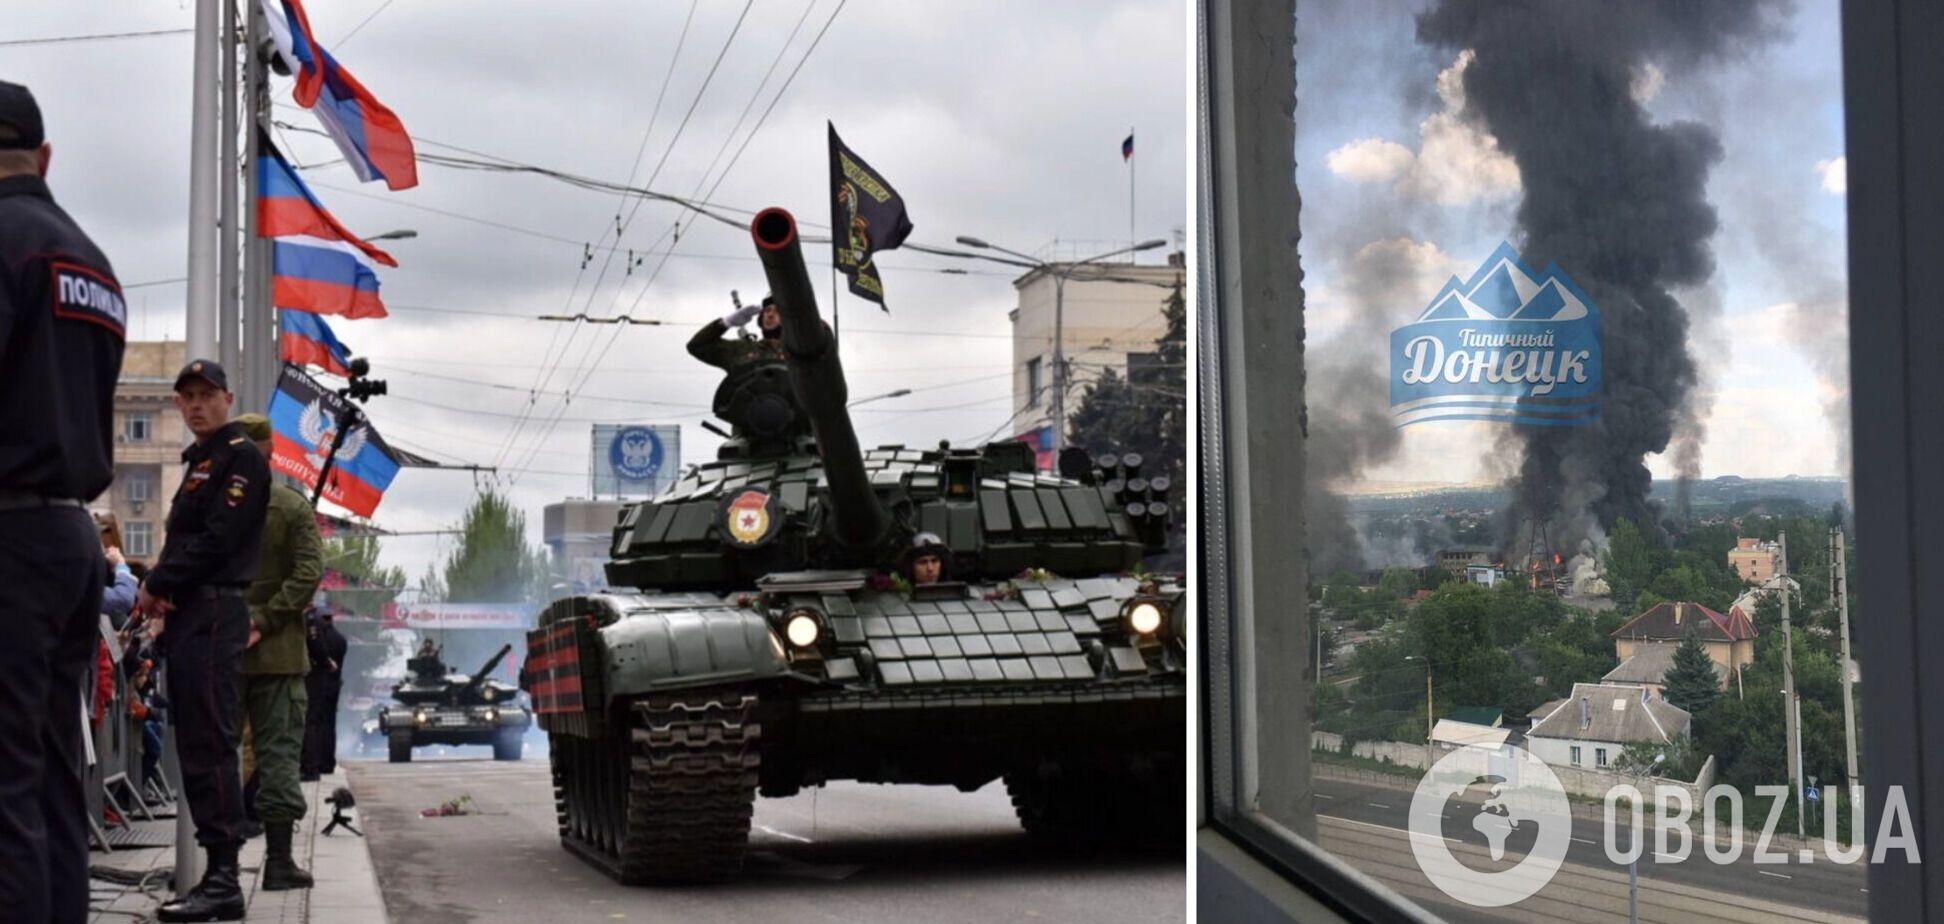 Горит и взрывается: на военной базе в оккупированном Донецке начался пожар. Фото и видео